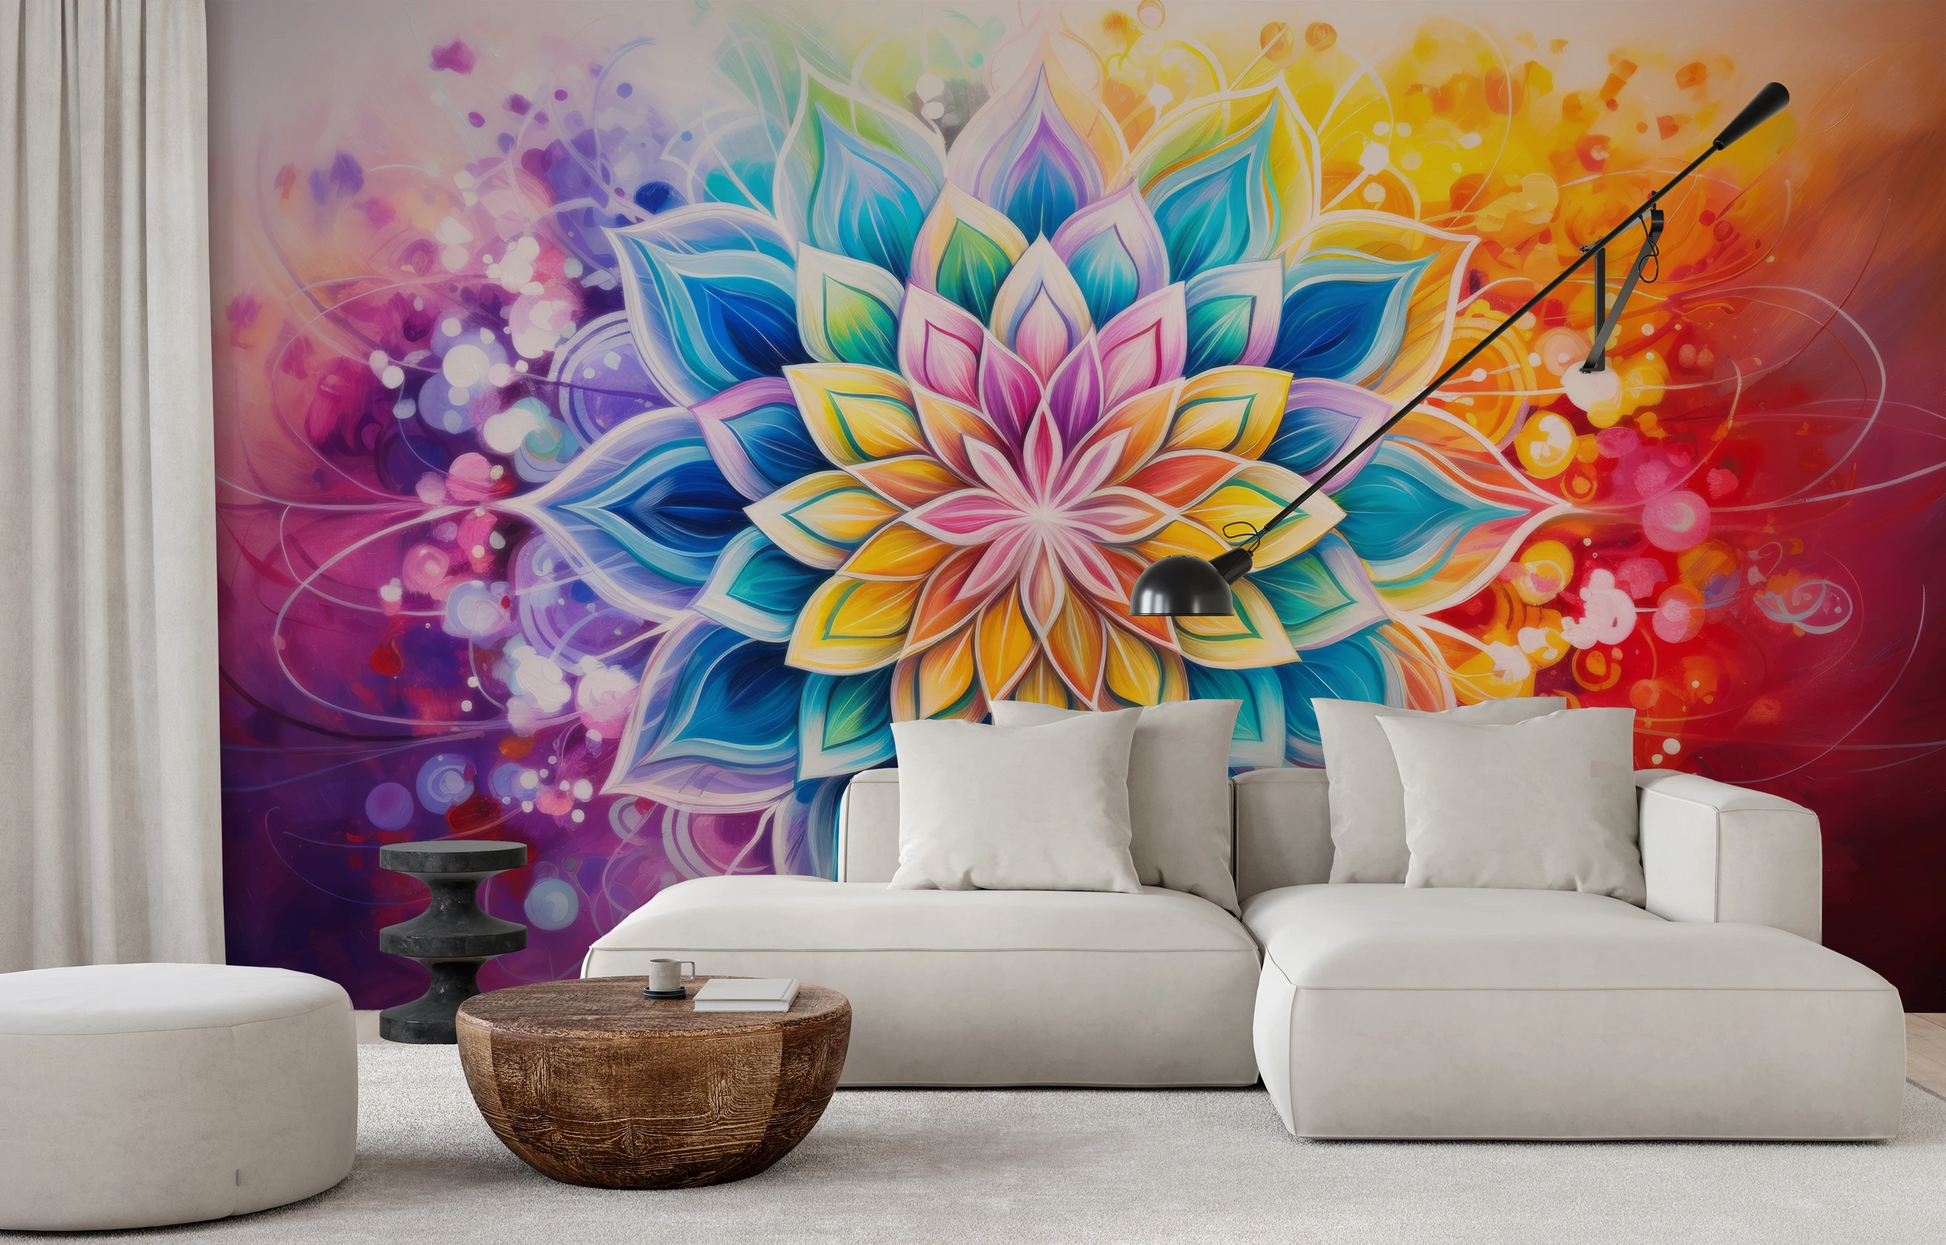 Fototapeta artystyczna o nazwie Floral Harmony pokazana w aranżacji wnętrza.